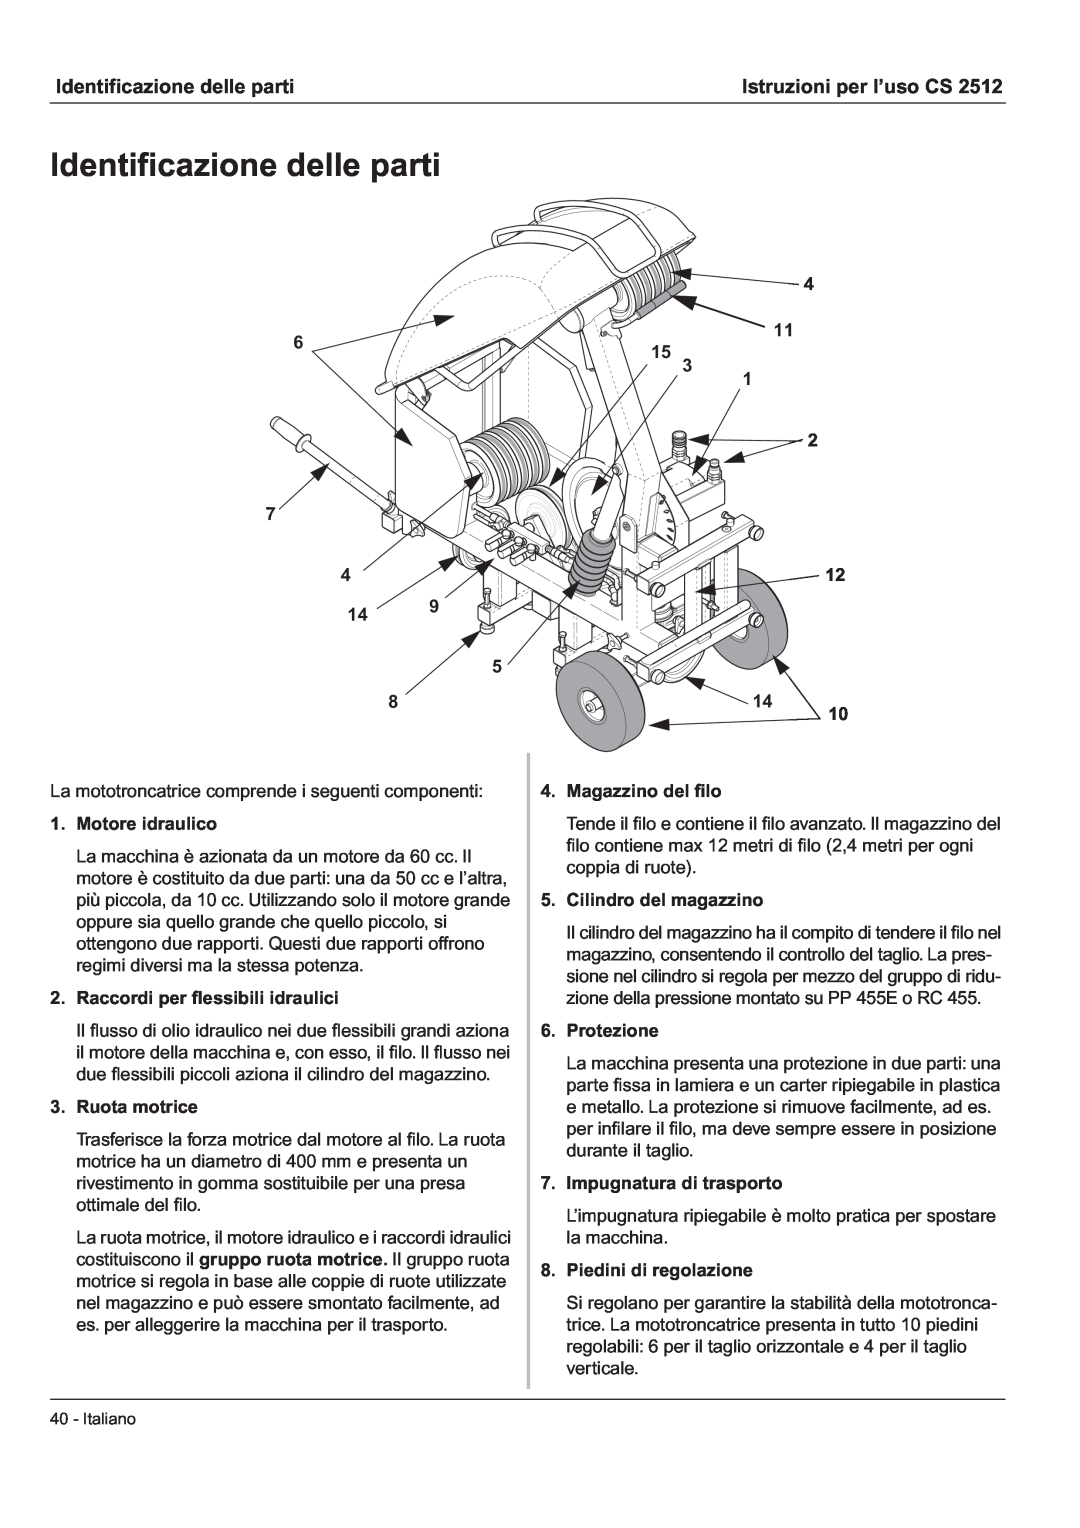 Husqvarna CS 2512 manual Identificazione delle parti, Istruzioni per l’uso CS 